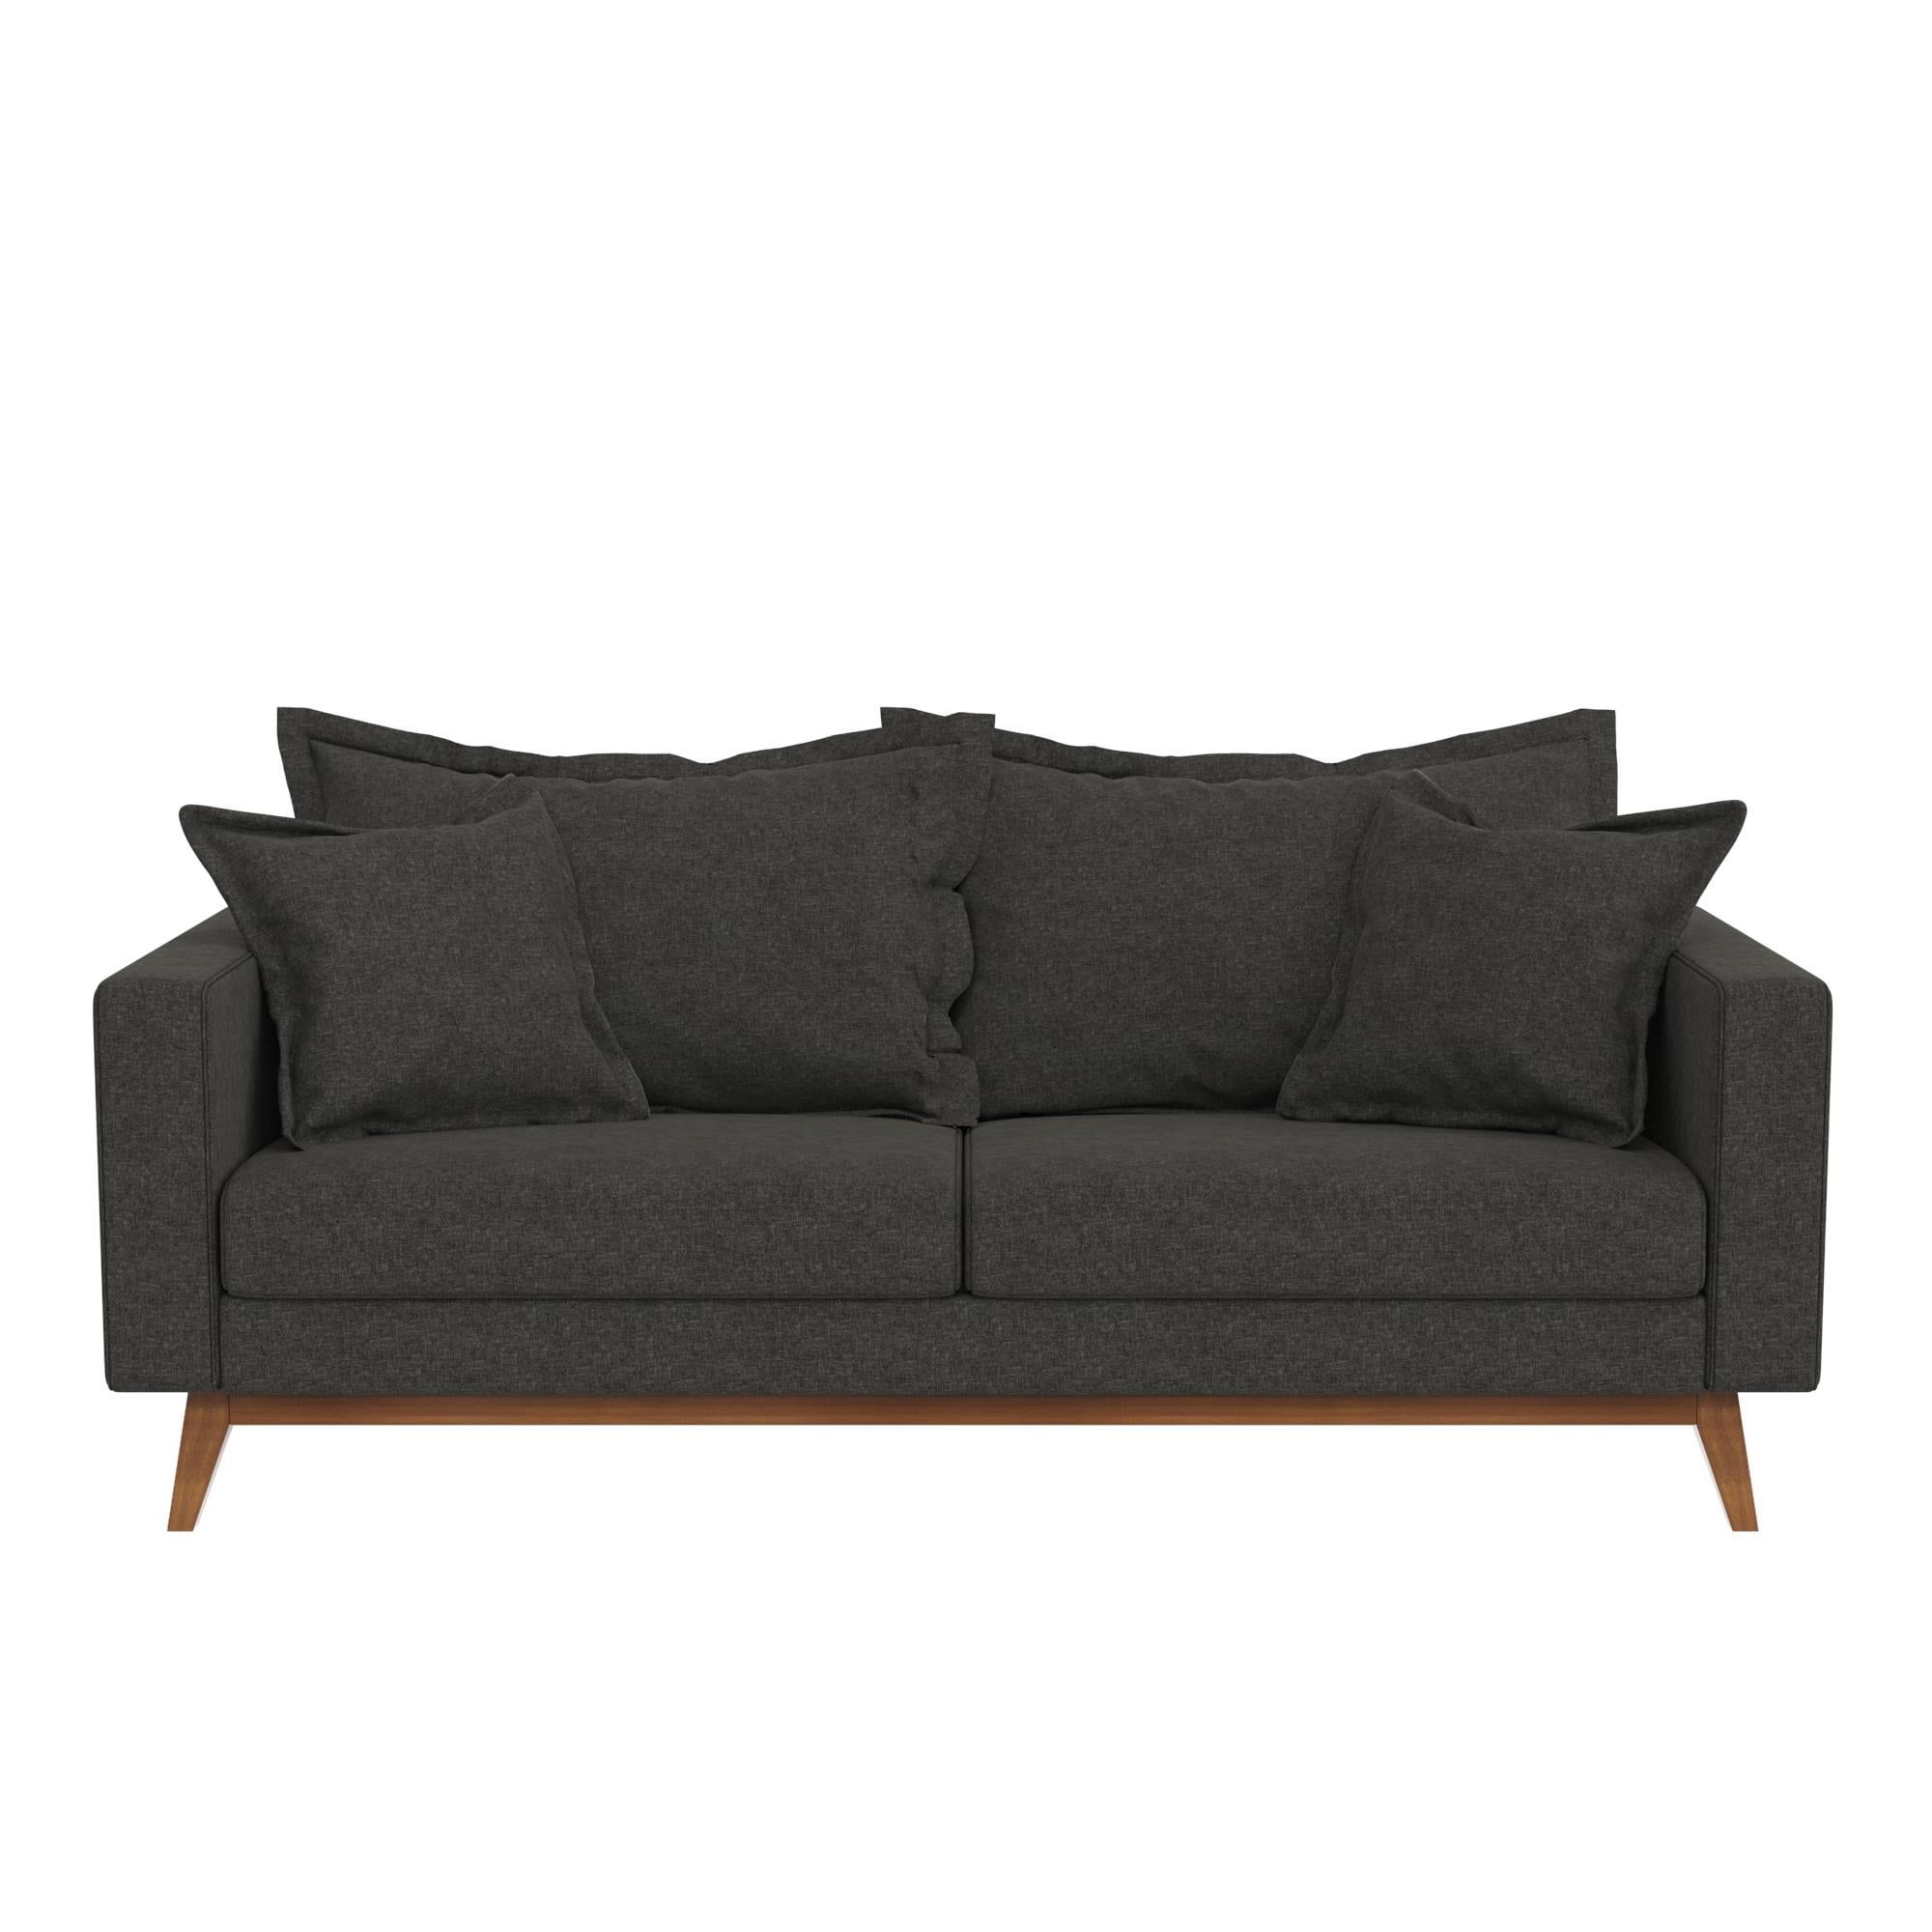 2017 Dhp Miriam Pillowback Wood Base Sofa, Gray Linen – Walmart For Sofas With Pillowback Wood Bases (View 7 of 15)